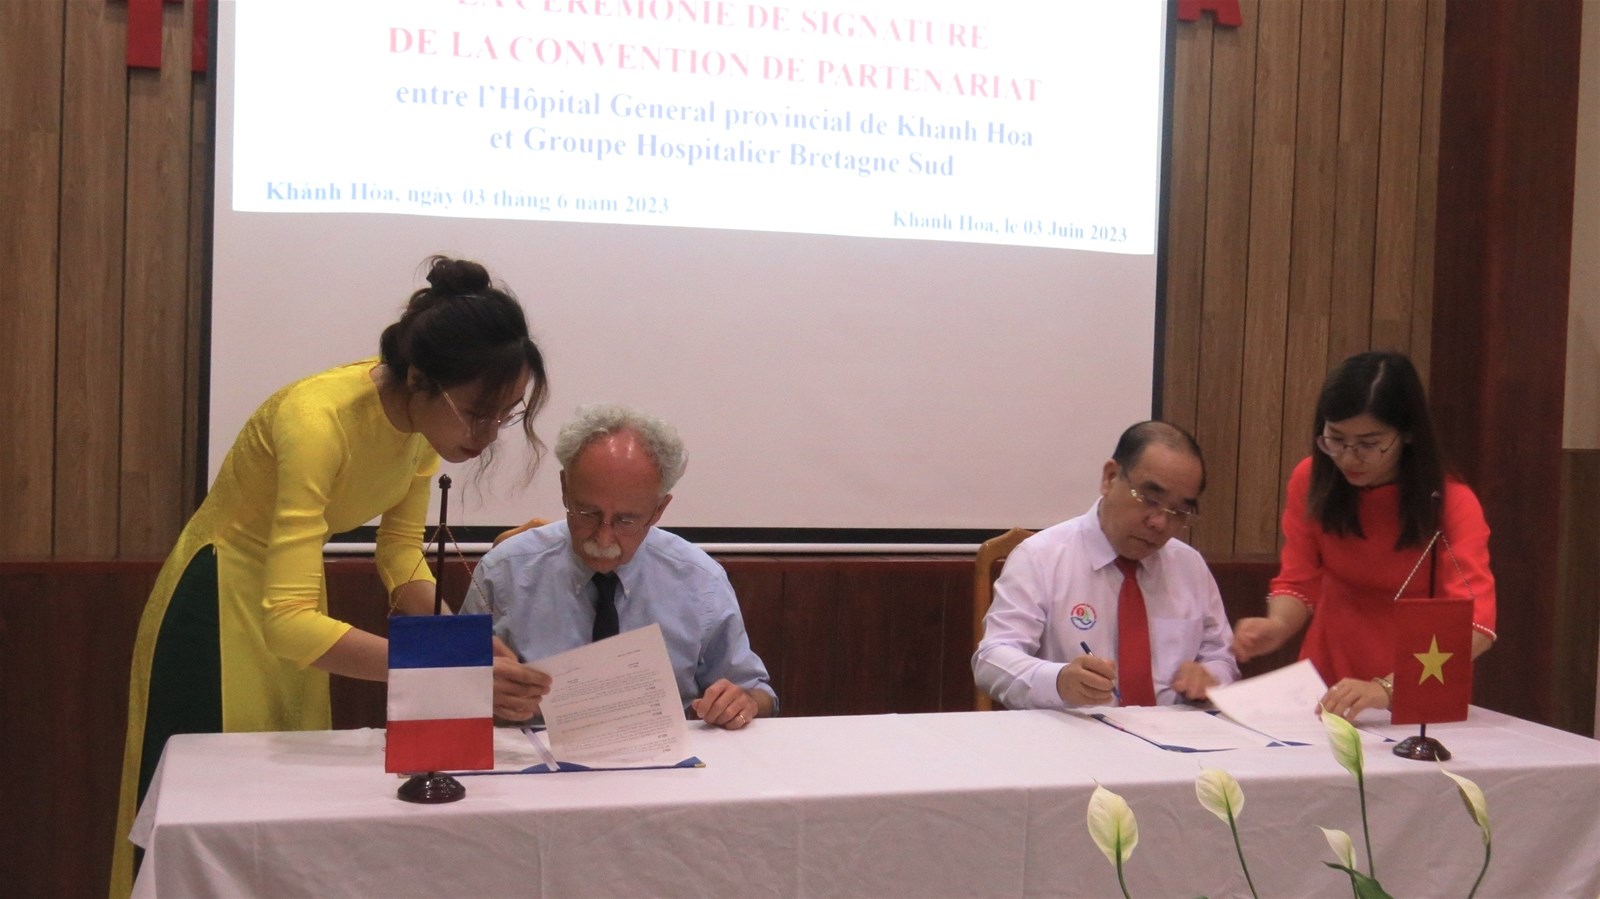 Bệnh viện Đa khoa tỉnh Khánh Hòa: Ký kết thoả thuận hợp tác trong lĩnh vực y tế với bệnh viện của Pháp